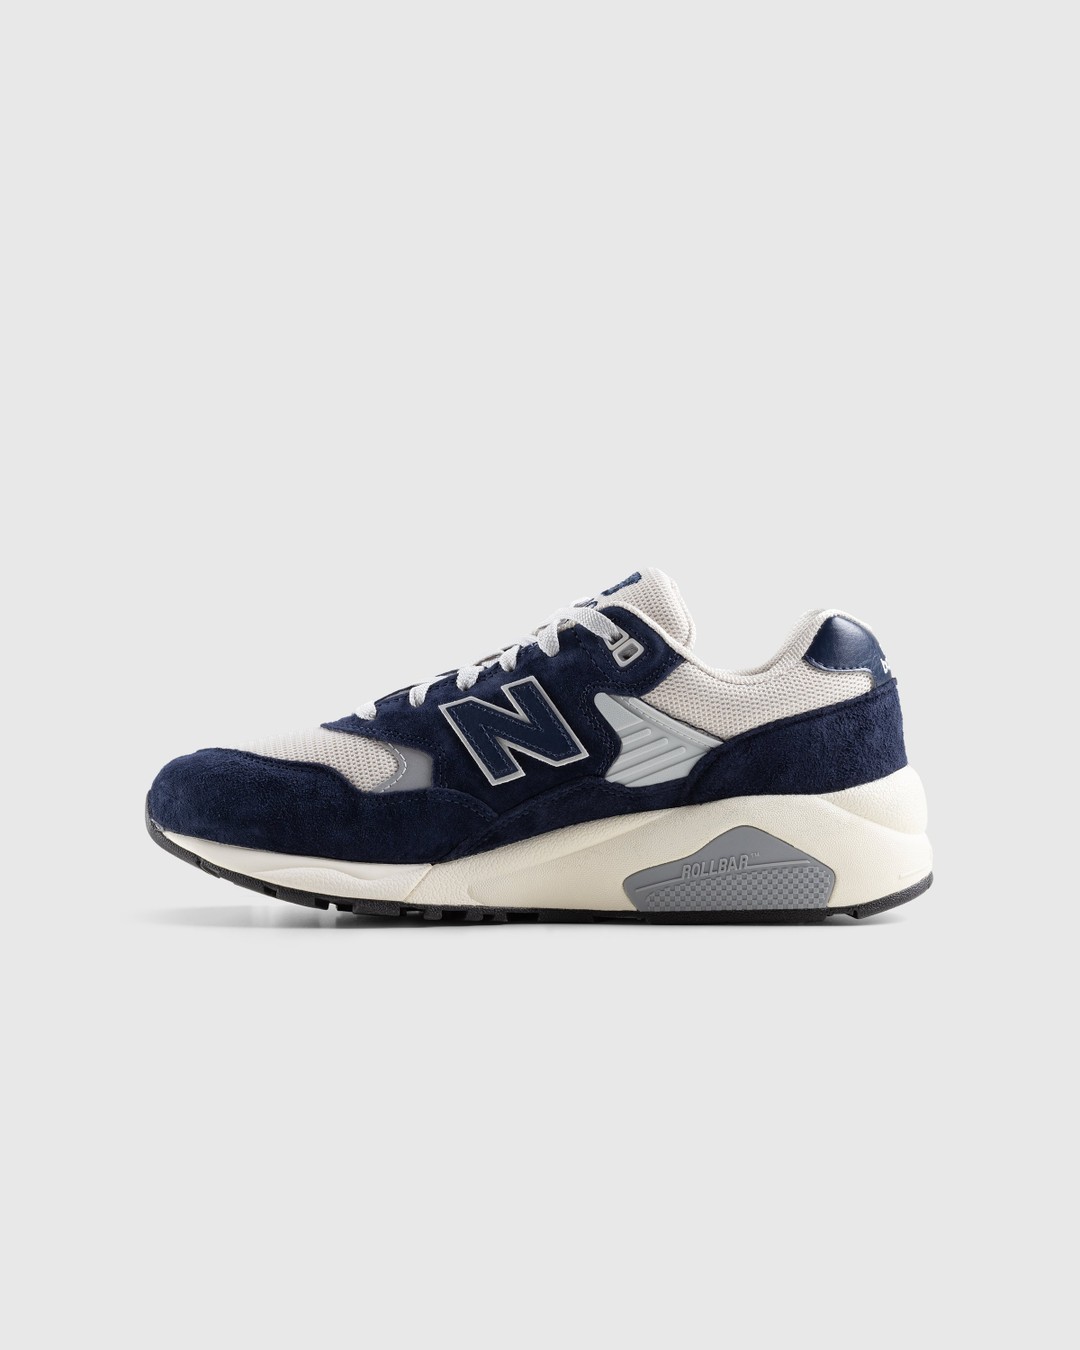 New Balance – MT580OG2 Natural Indigo - Sneakers - Blue - Image 2